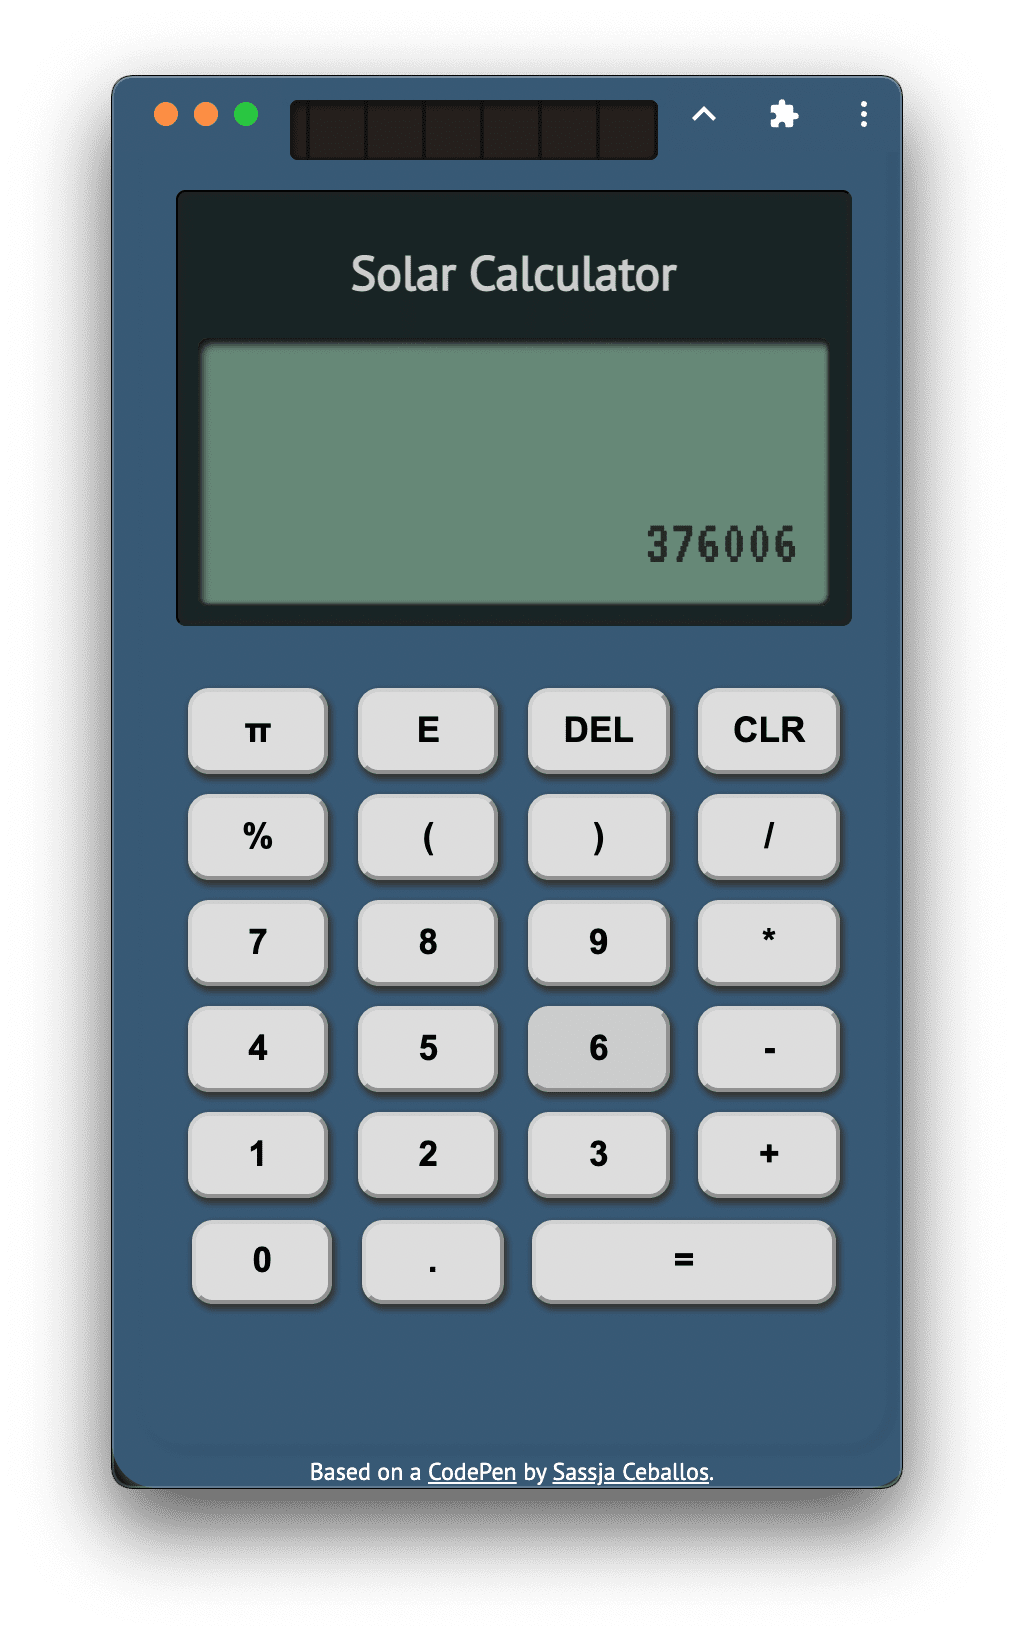 เครื่องคิดเลข Designcember Calculator ทำงานในโหมดสแตนด์อโลน โดยเปิดใช้งานฟีเจอร์การวางซ้อนการควบคุมหน้าต่างอยู่ การแสดงผลจะสะกดว่า &#39;Google&#39; ในตัวอักษรเครื่องคิดเลข